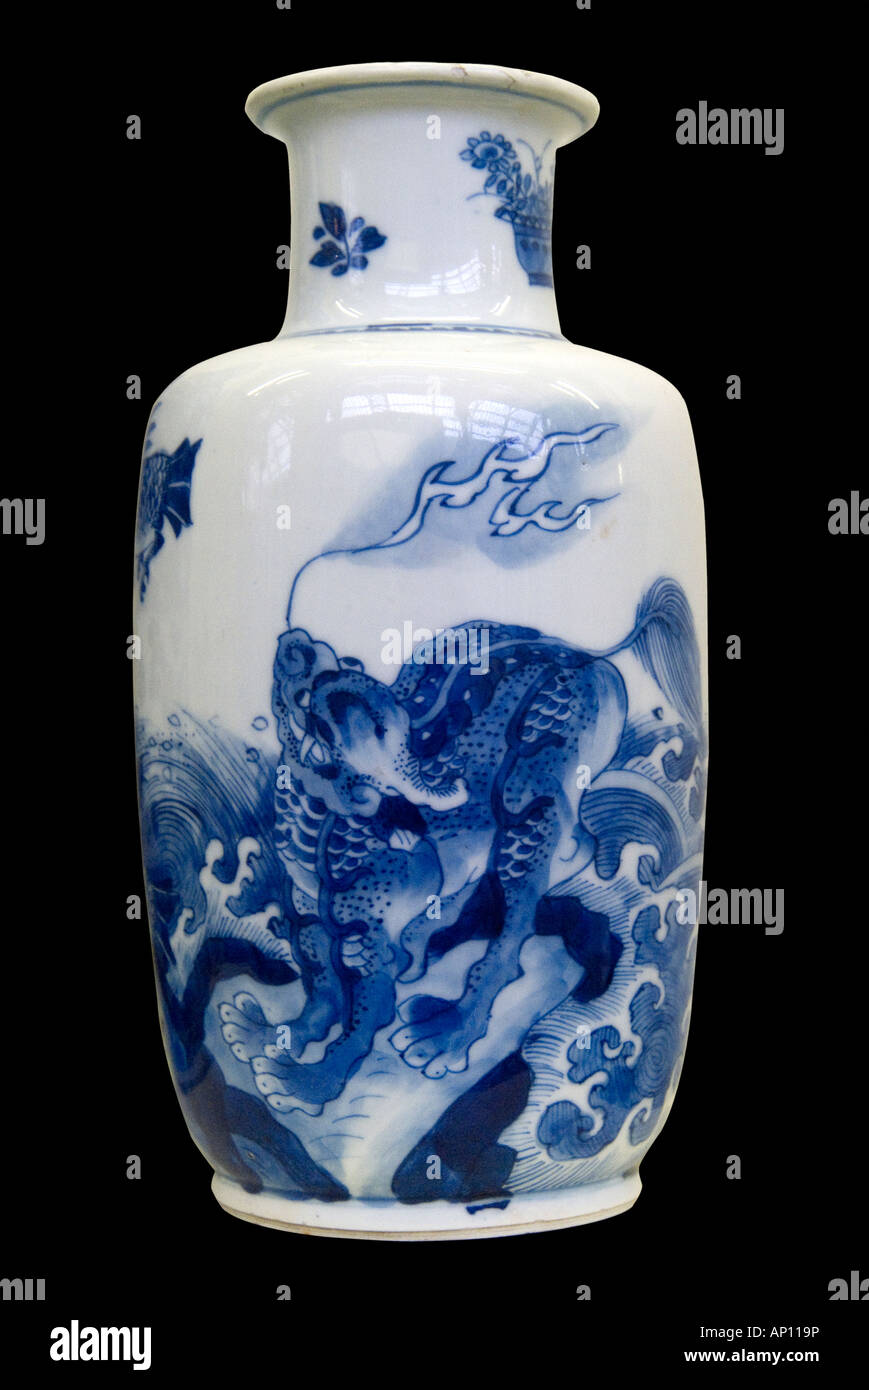 La dinastia Ming dragon vaso di porcellana cinese in ceramica fire feroce simmetria equilibrio grazia armonia a nord-est della Cina Asia Manchuri asiatica Foto Stock